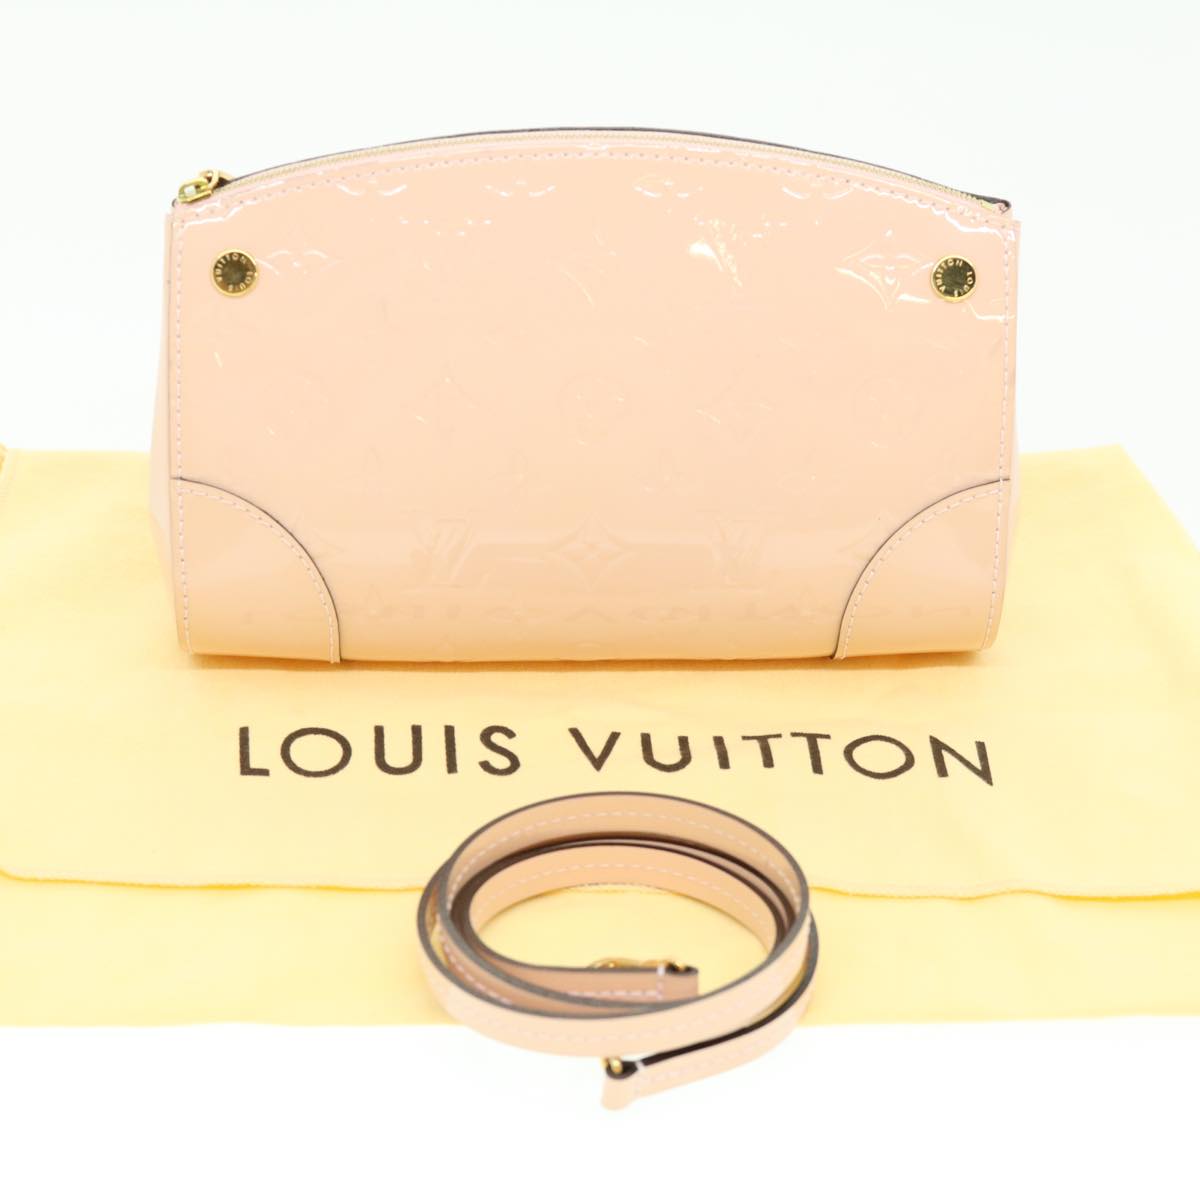 LOUIS VUITTON Vernis Santa monica clutch Shoulder Bag Pink M50410 Auth rz414